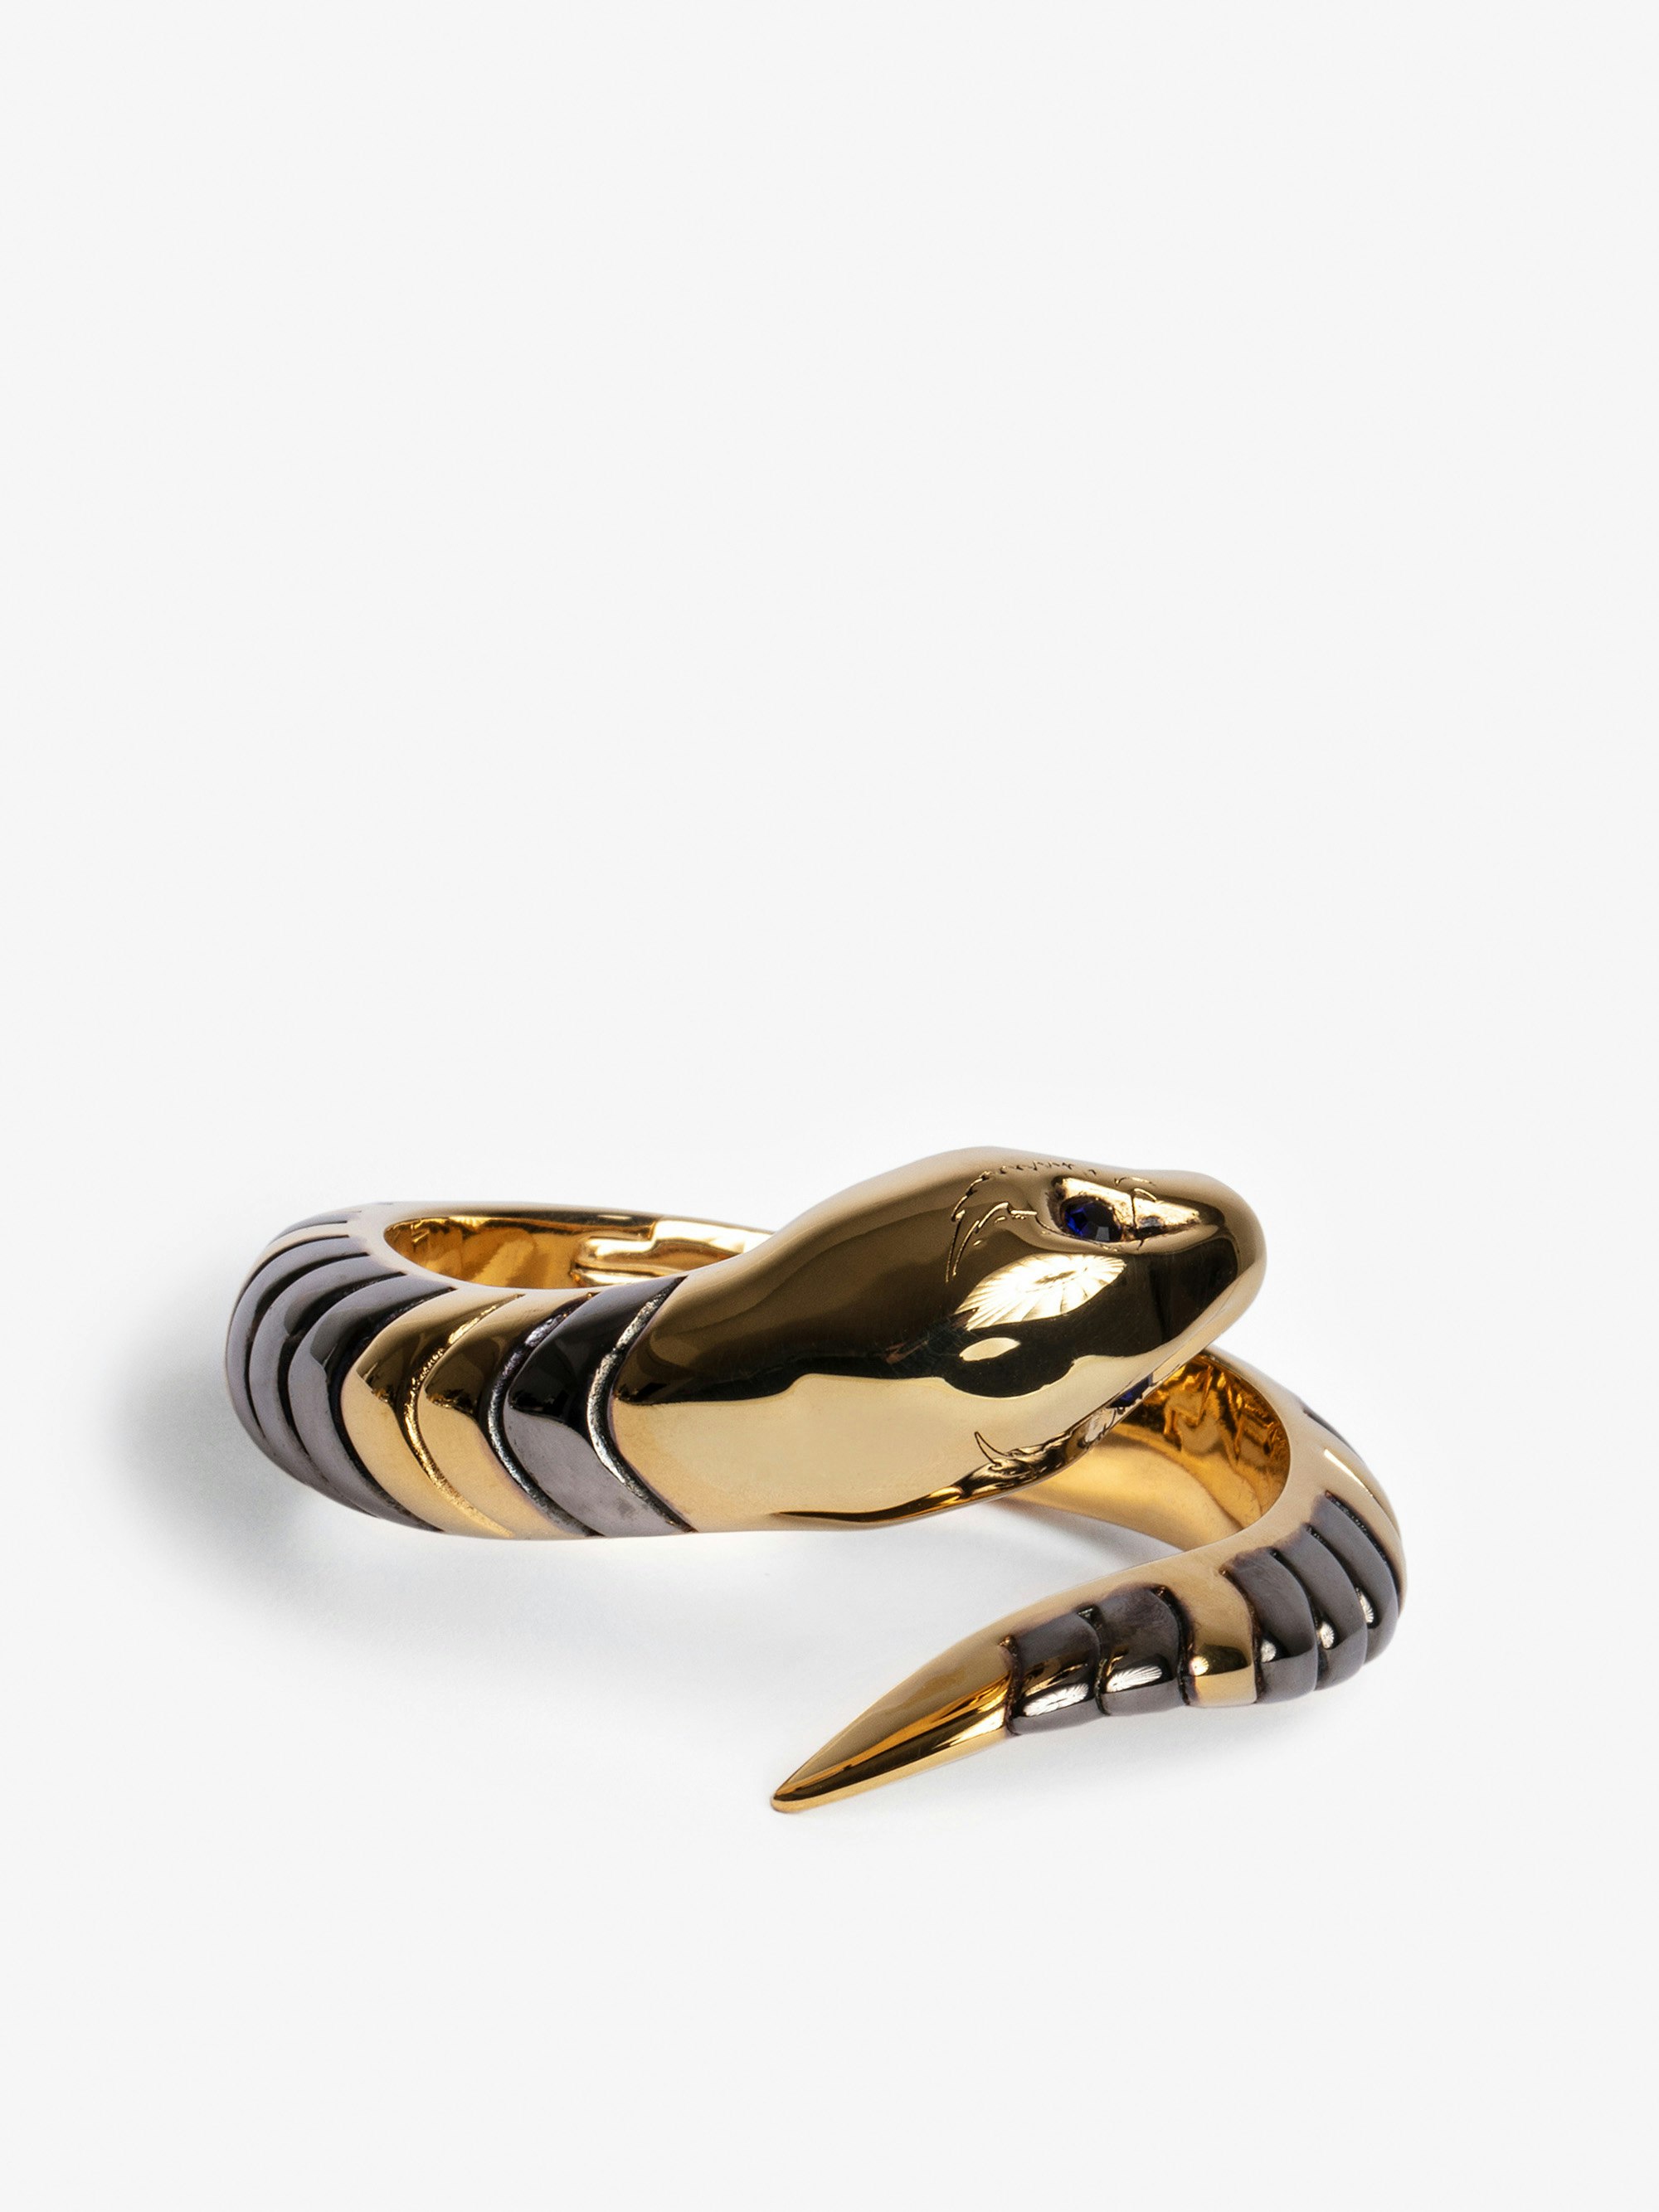 Bracciale Snake - Bracciale a serpente in ottone dorato.